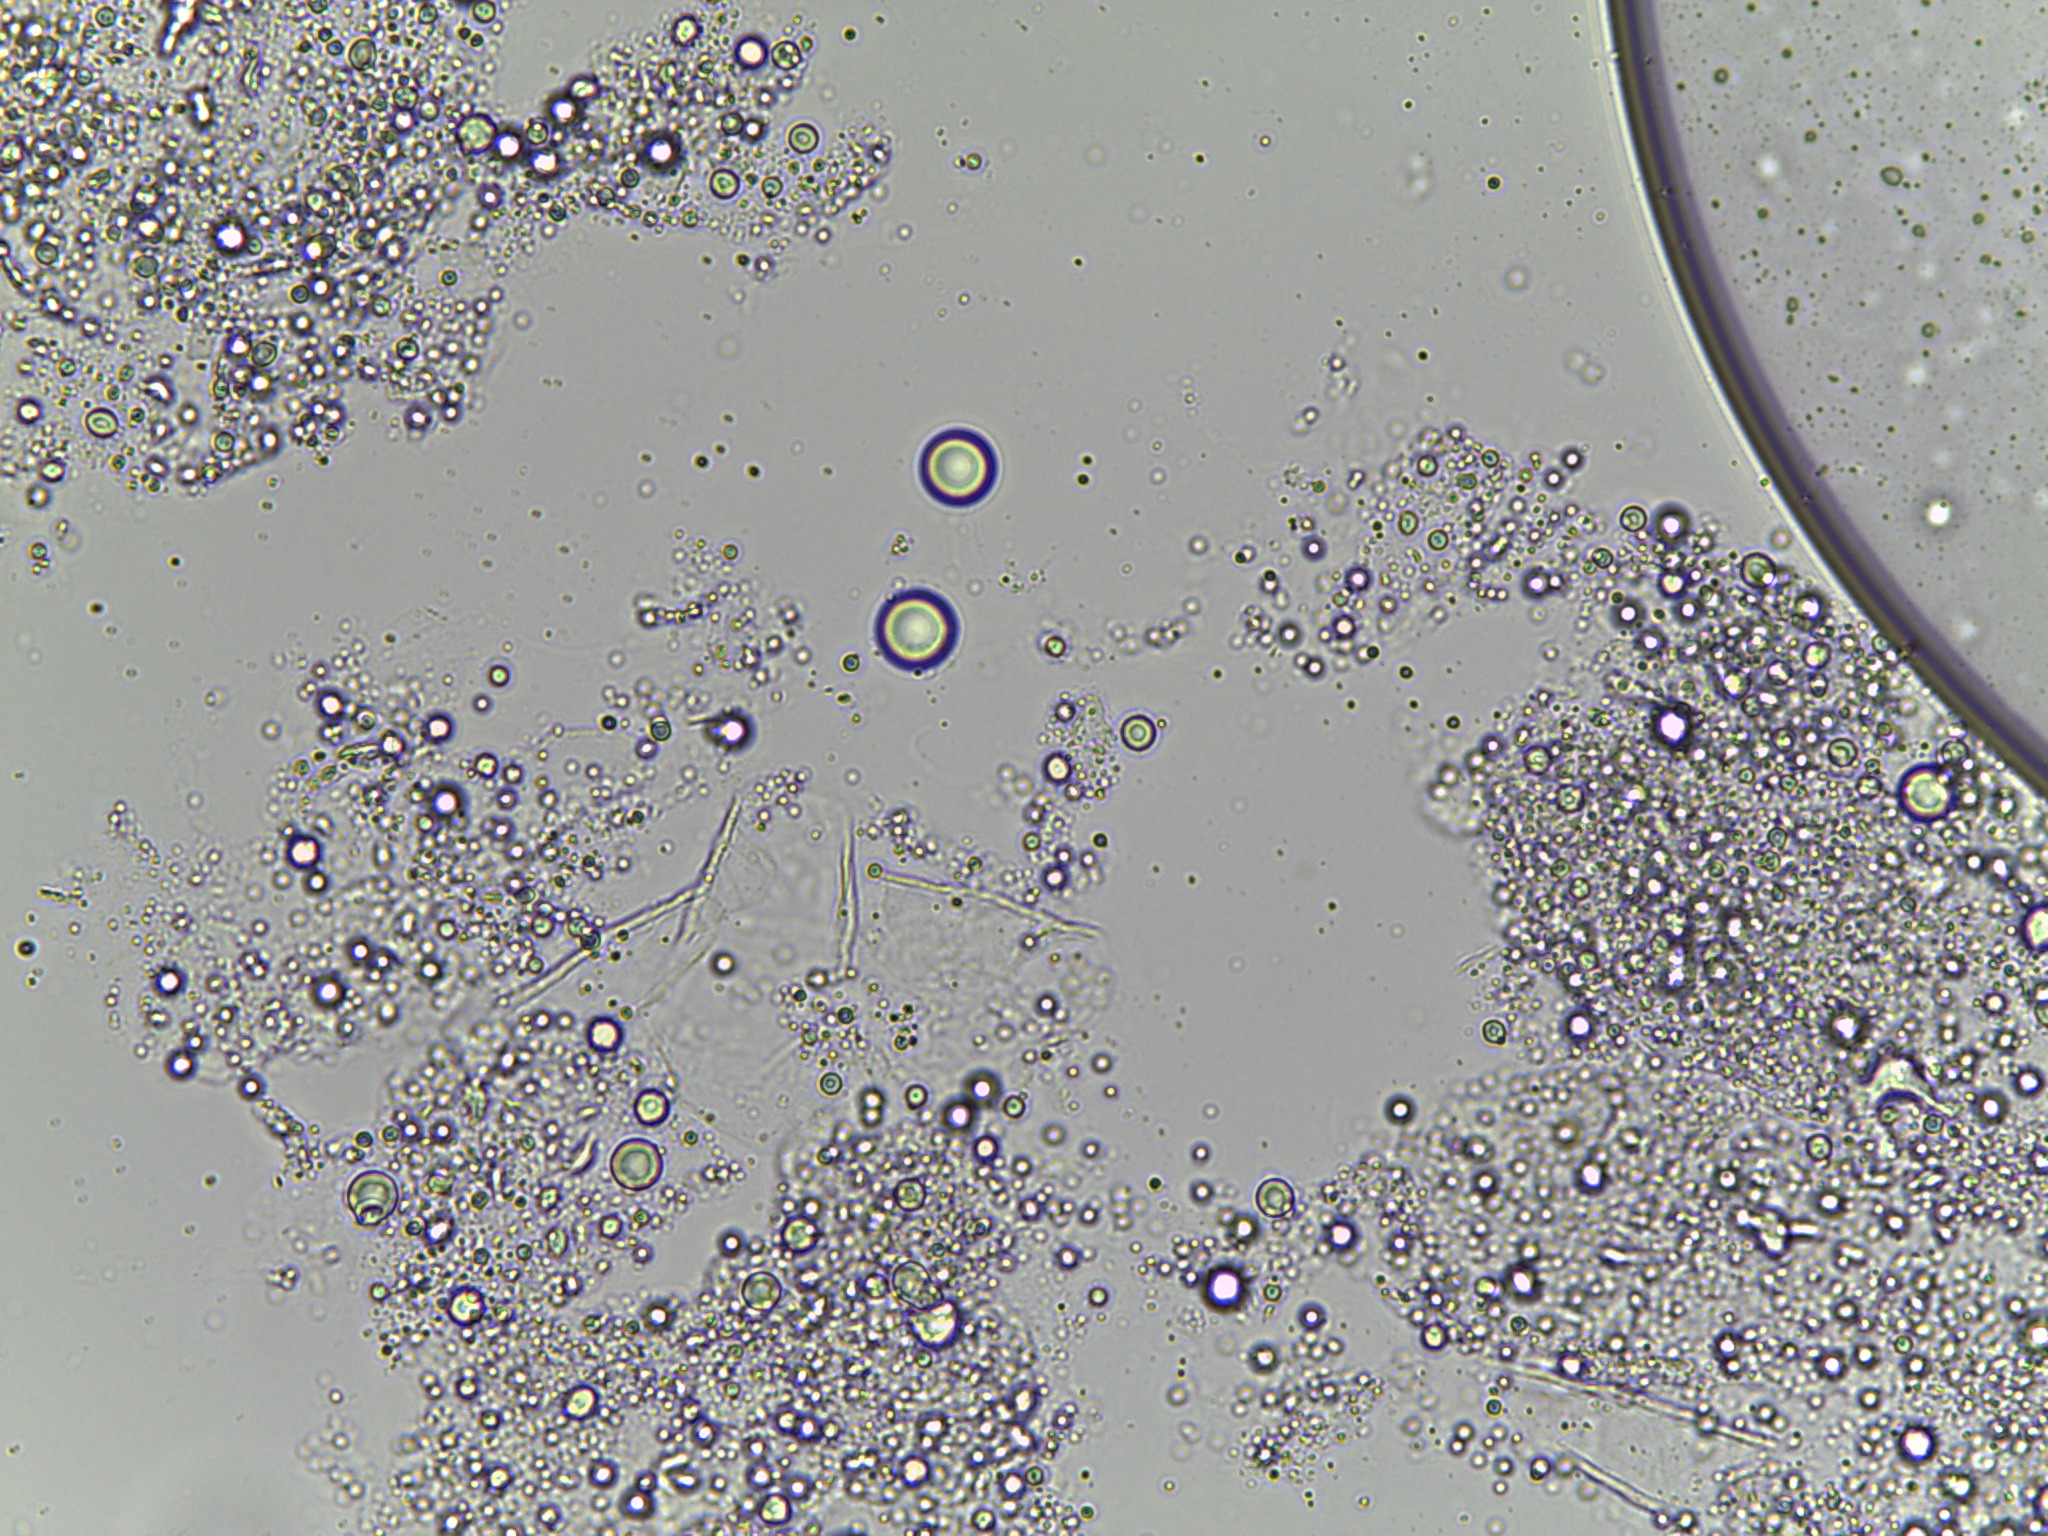 Esame microscopico micologico diretto mostrante spore in ammassi e pseudomicelio in un caso di pitiriasi versicolor